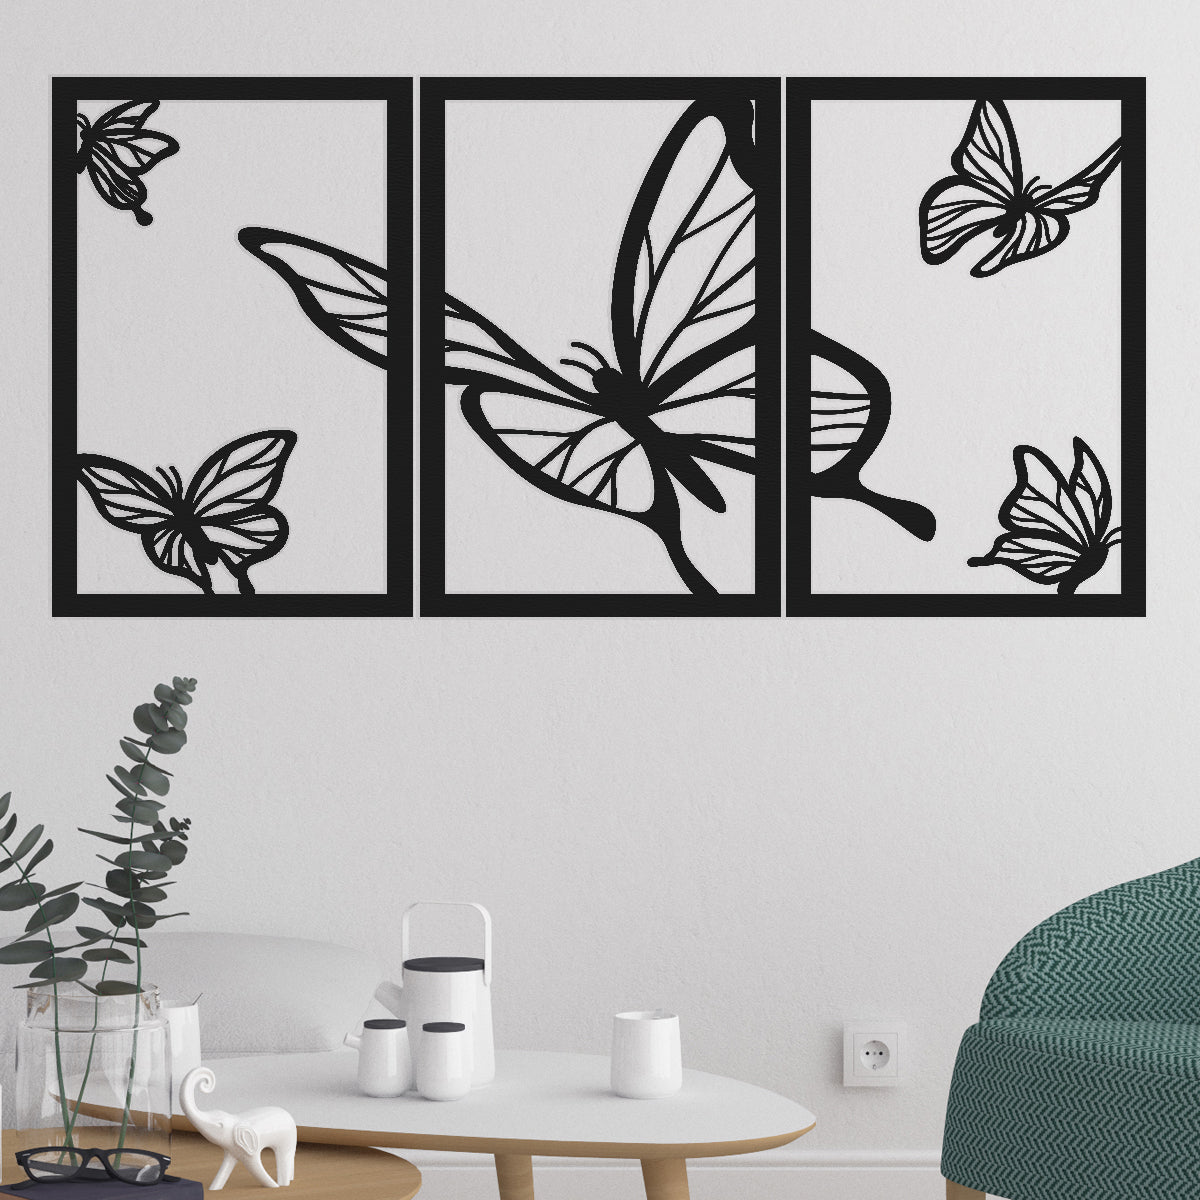 Conjunto de 3 cuadros trípticos de líneas con fondo blanco con marco negro  de madera 35x45